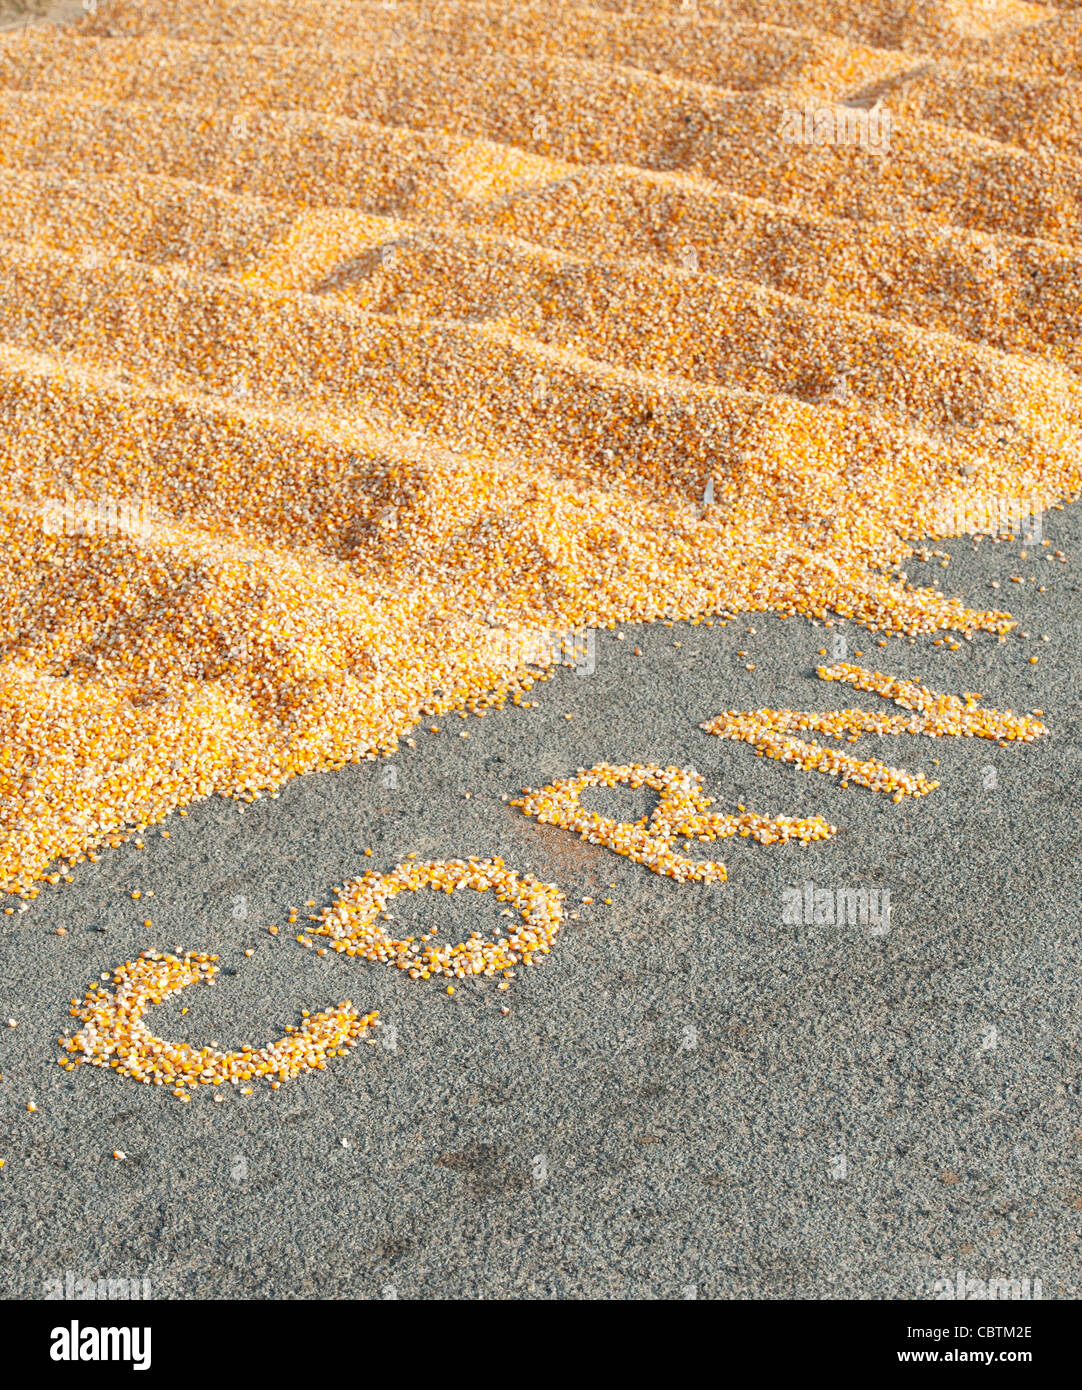 Sonne Trocknen Mais/Maiskörner in Indien auf einer Straße mit dem Wort MAIS heraus geschrieben. Andhra Pradesh, Indien Stockfoto